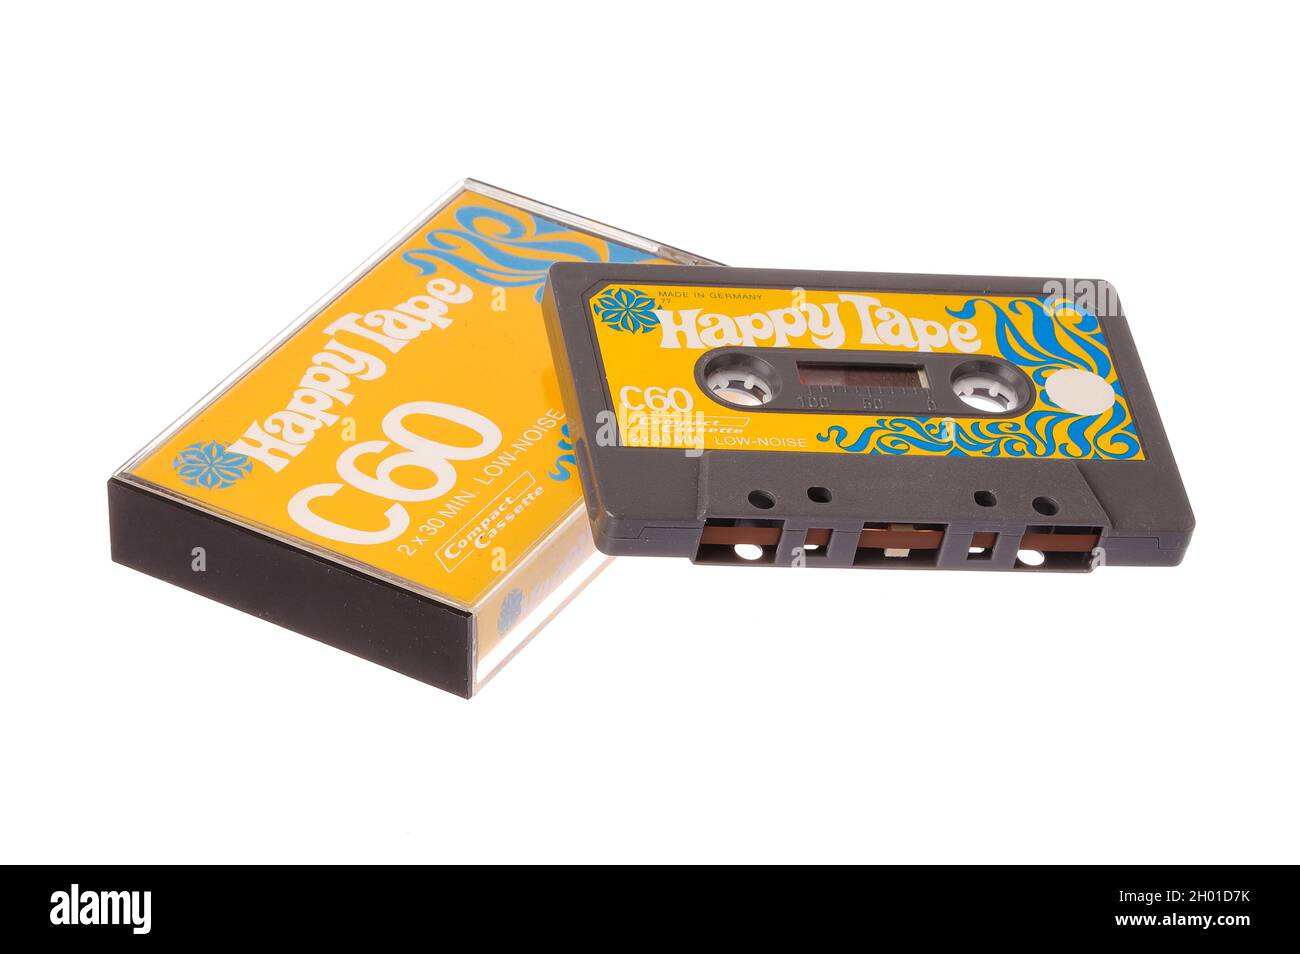 Stockholm, Suède - 8 octobre 2021 : cassette audio compacte C60 1977 et cassette de marque Happy Tape, produite par Agfa-Gevaert AG pour le suédois Banque D'Images